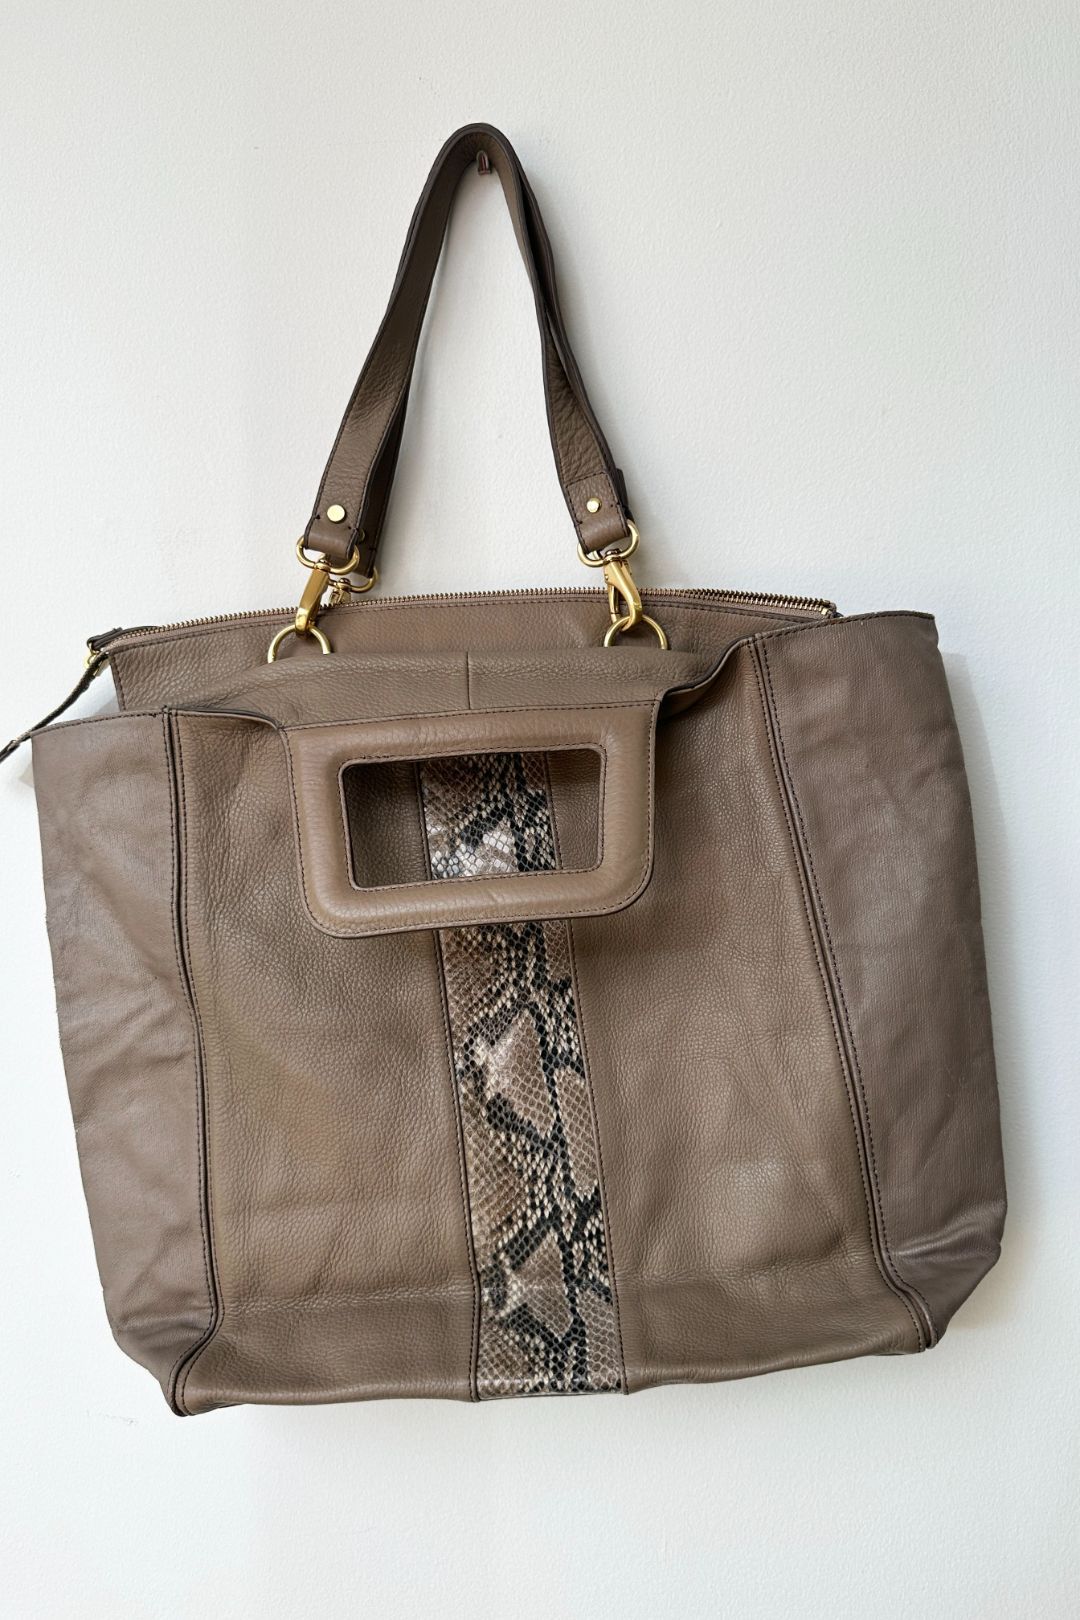 Mimco Taupe Leather Snake Print Bag